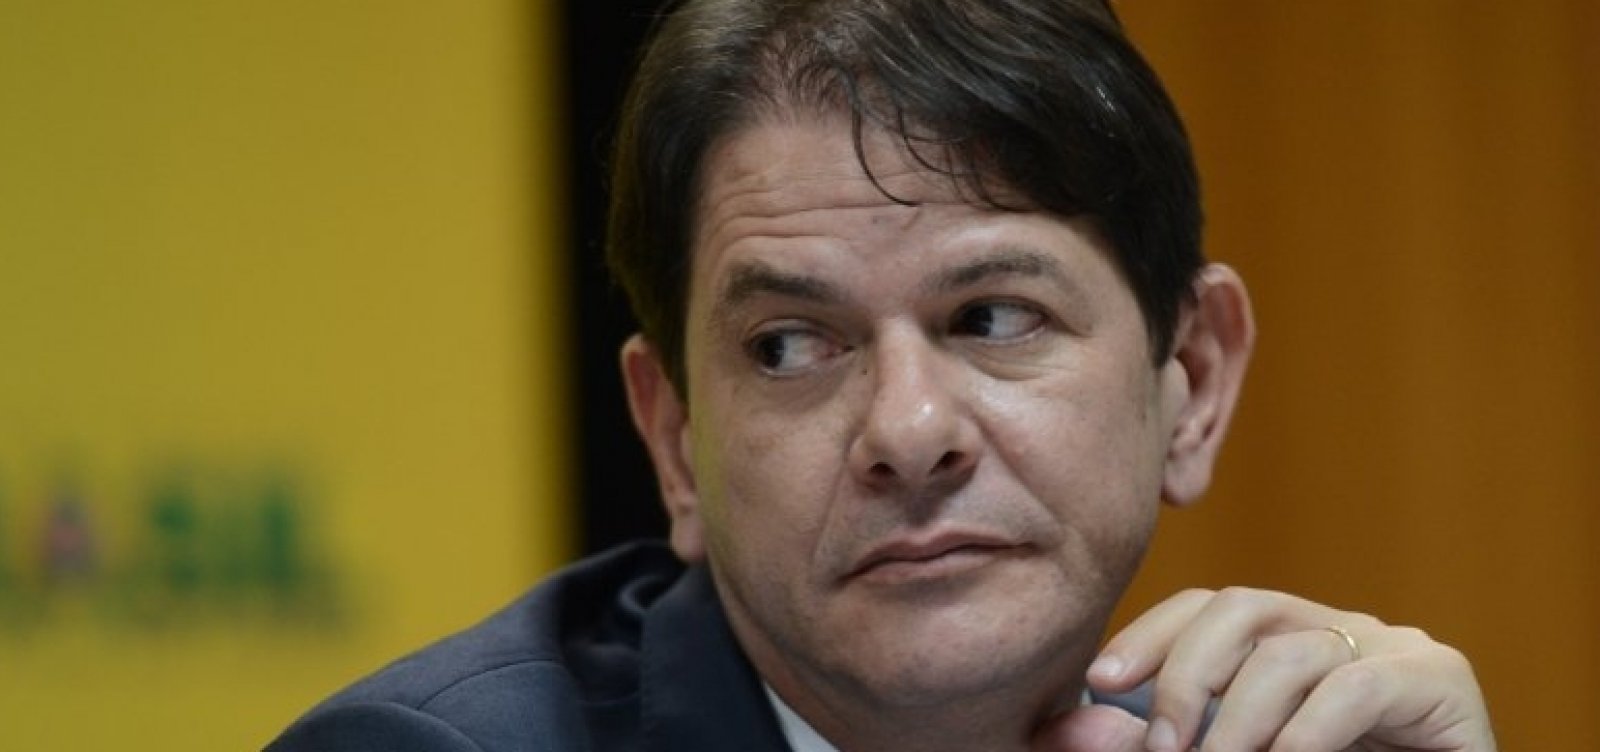 Cid Gomes contraria Ciro e diz que PDT deveria ter uma 'dose de boa vontade' com Tabata